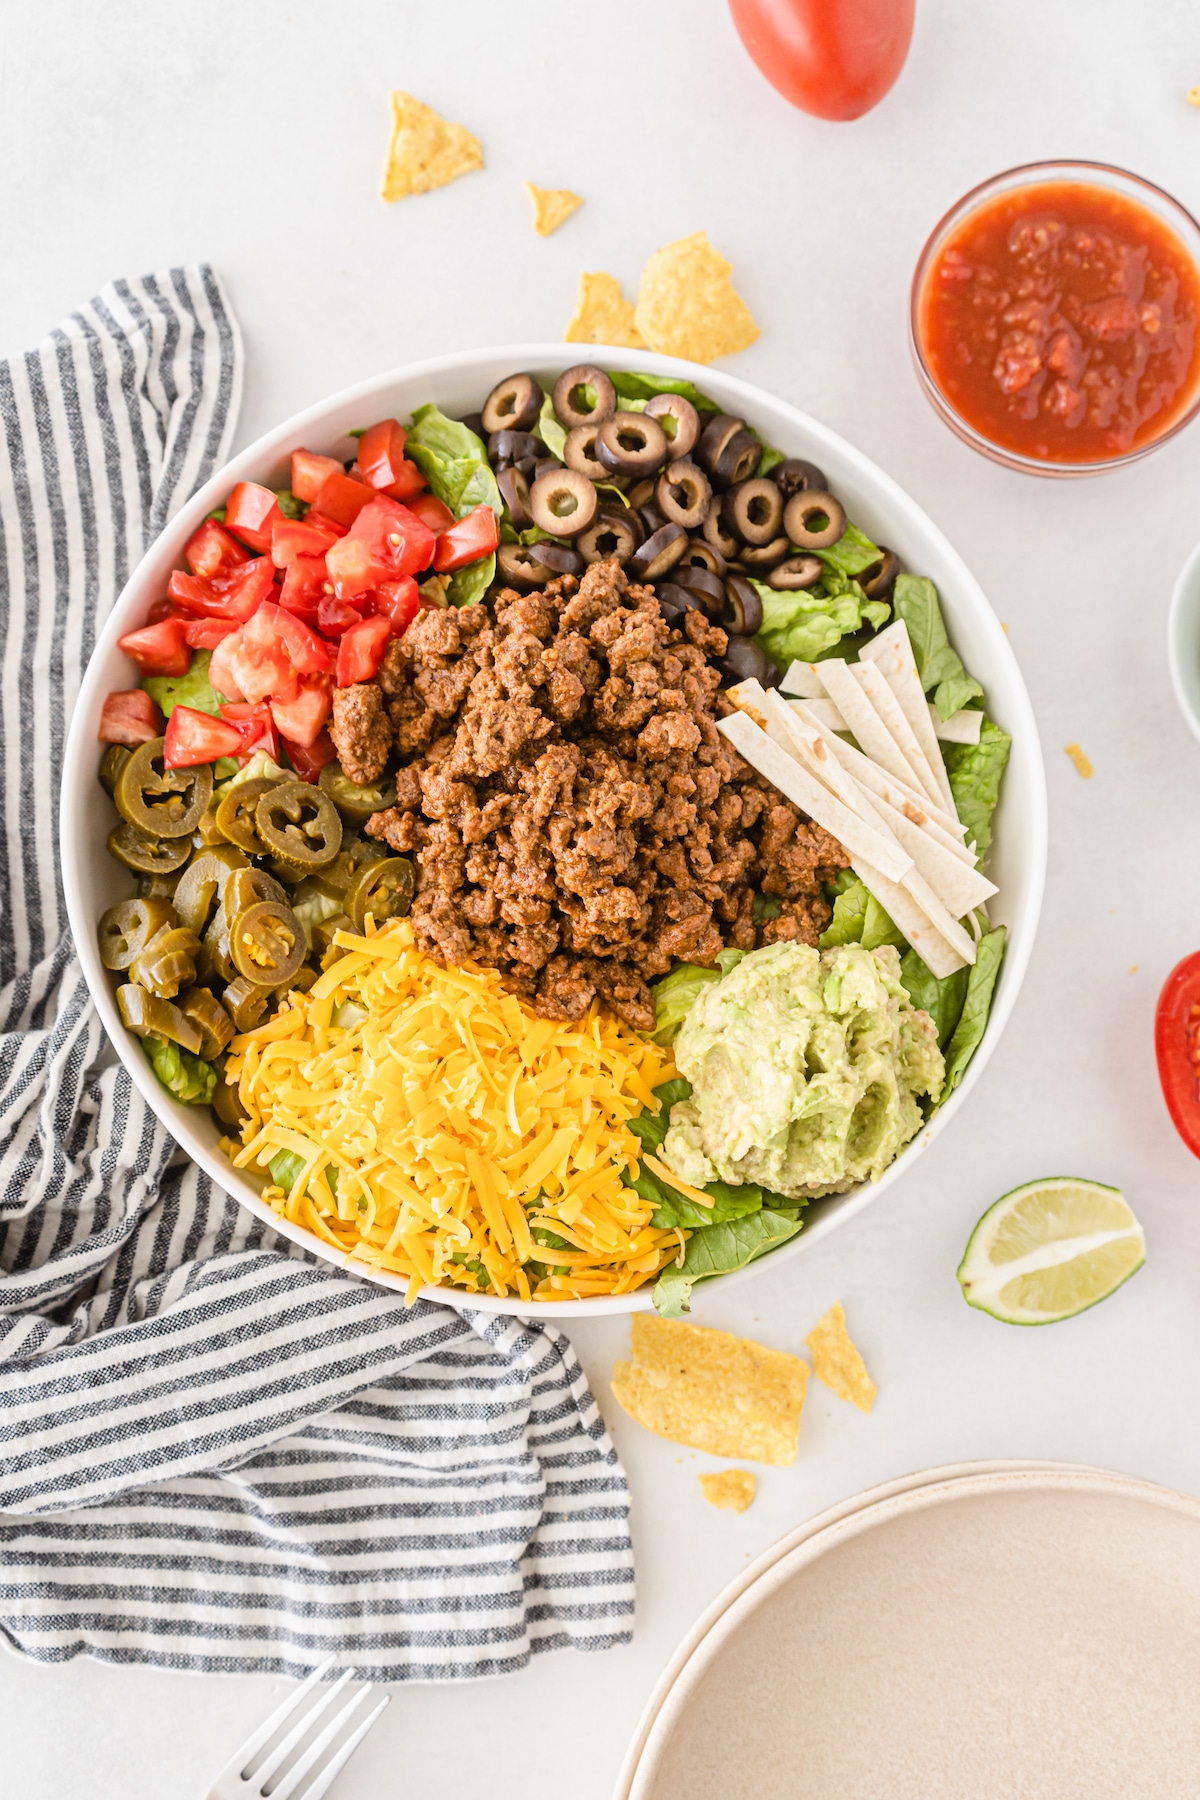 taco salad ingredients in bowl.